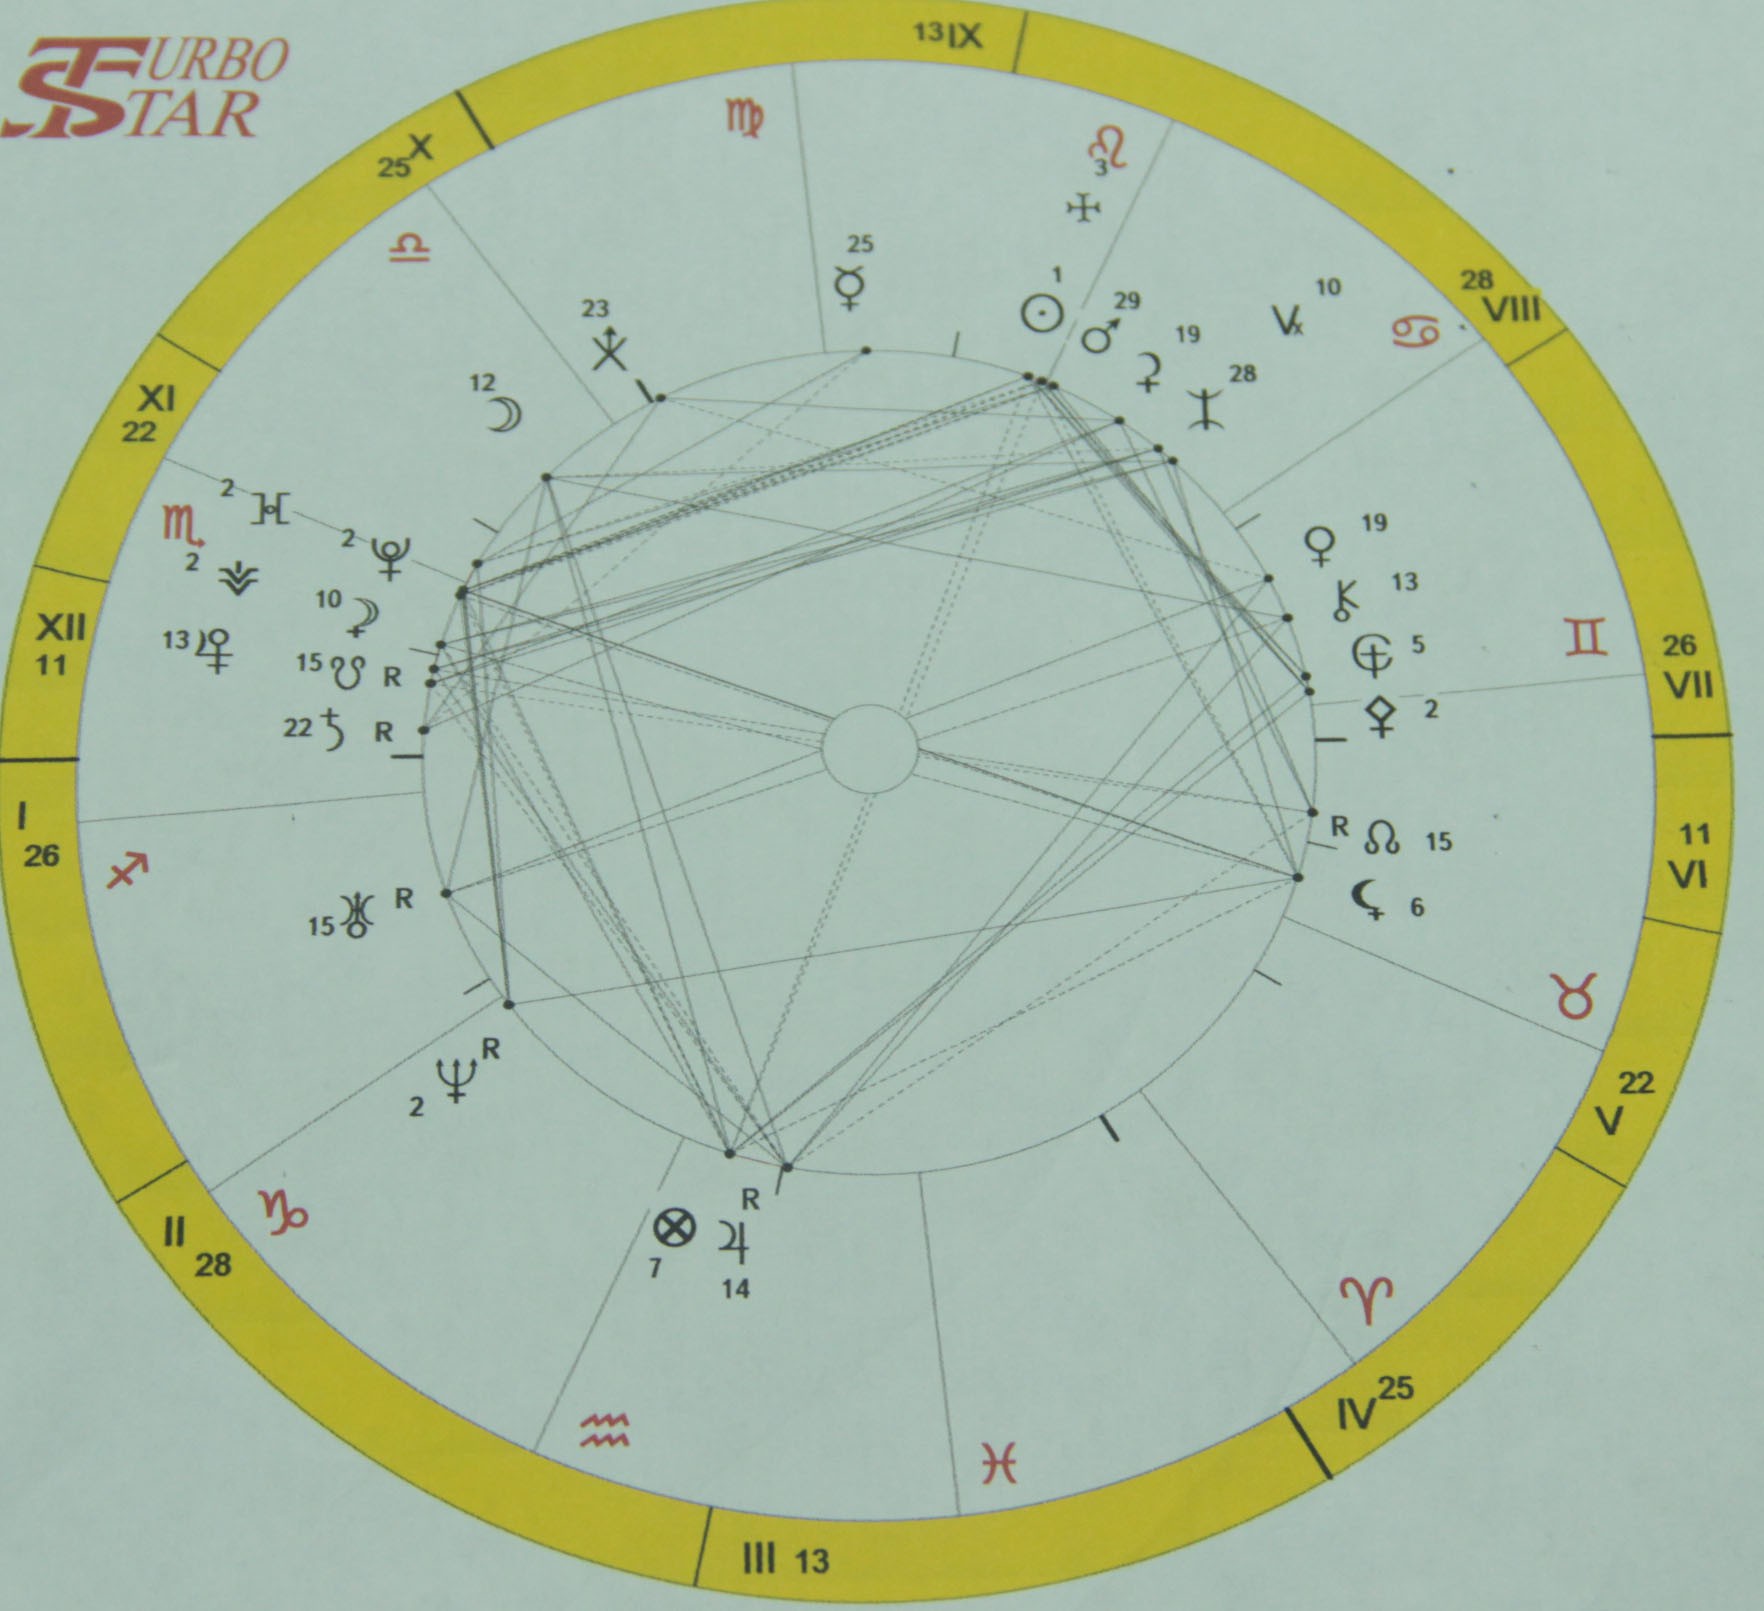 Venus mune horoscope inokupa mari uye rudo. Asi anogonawo kuvatora! Zvino chii?